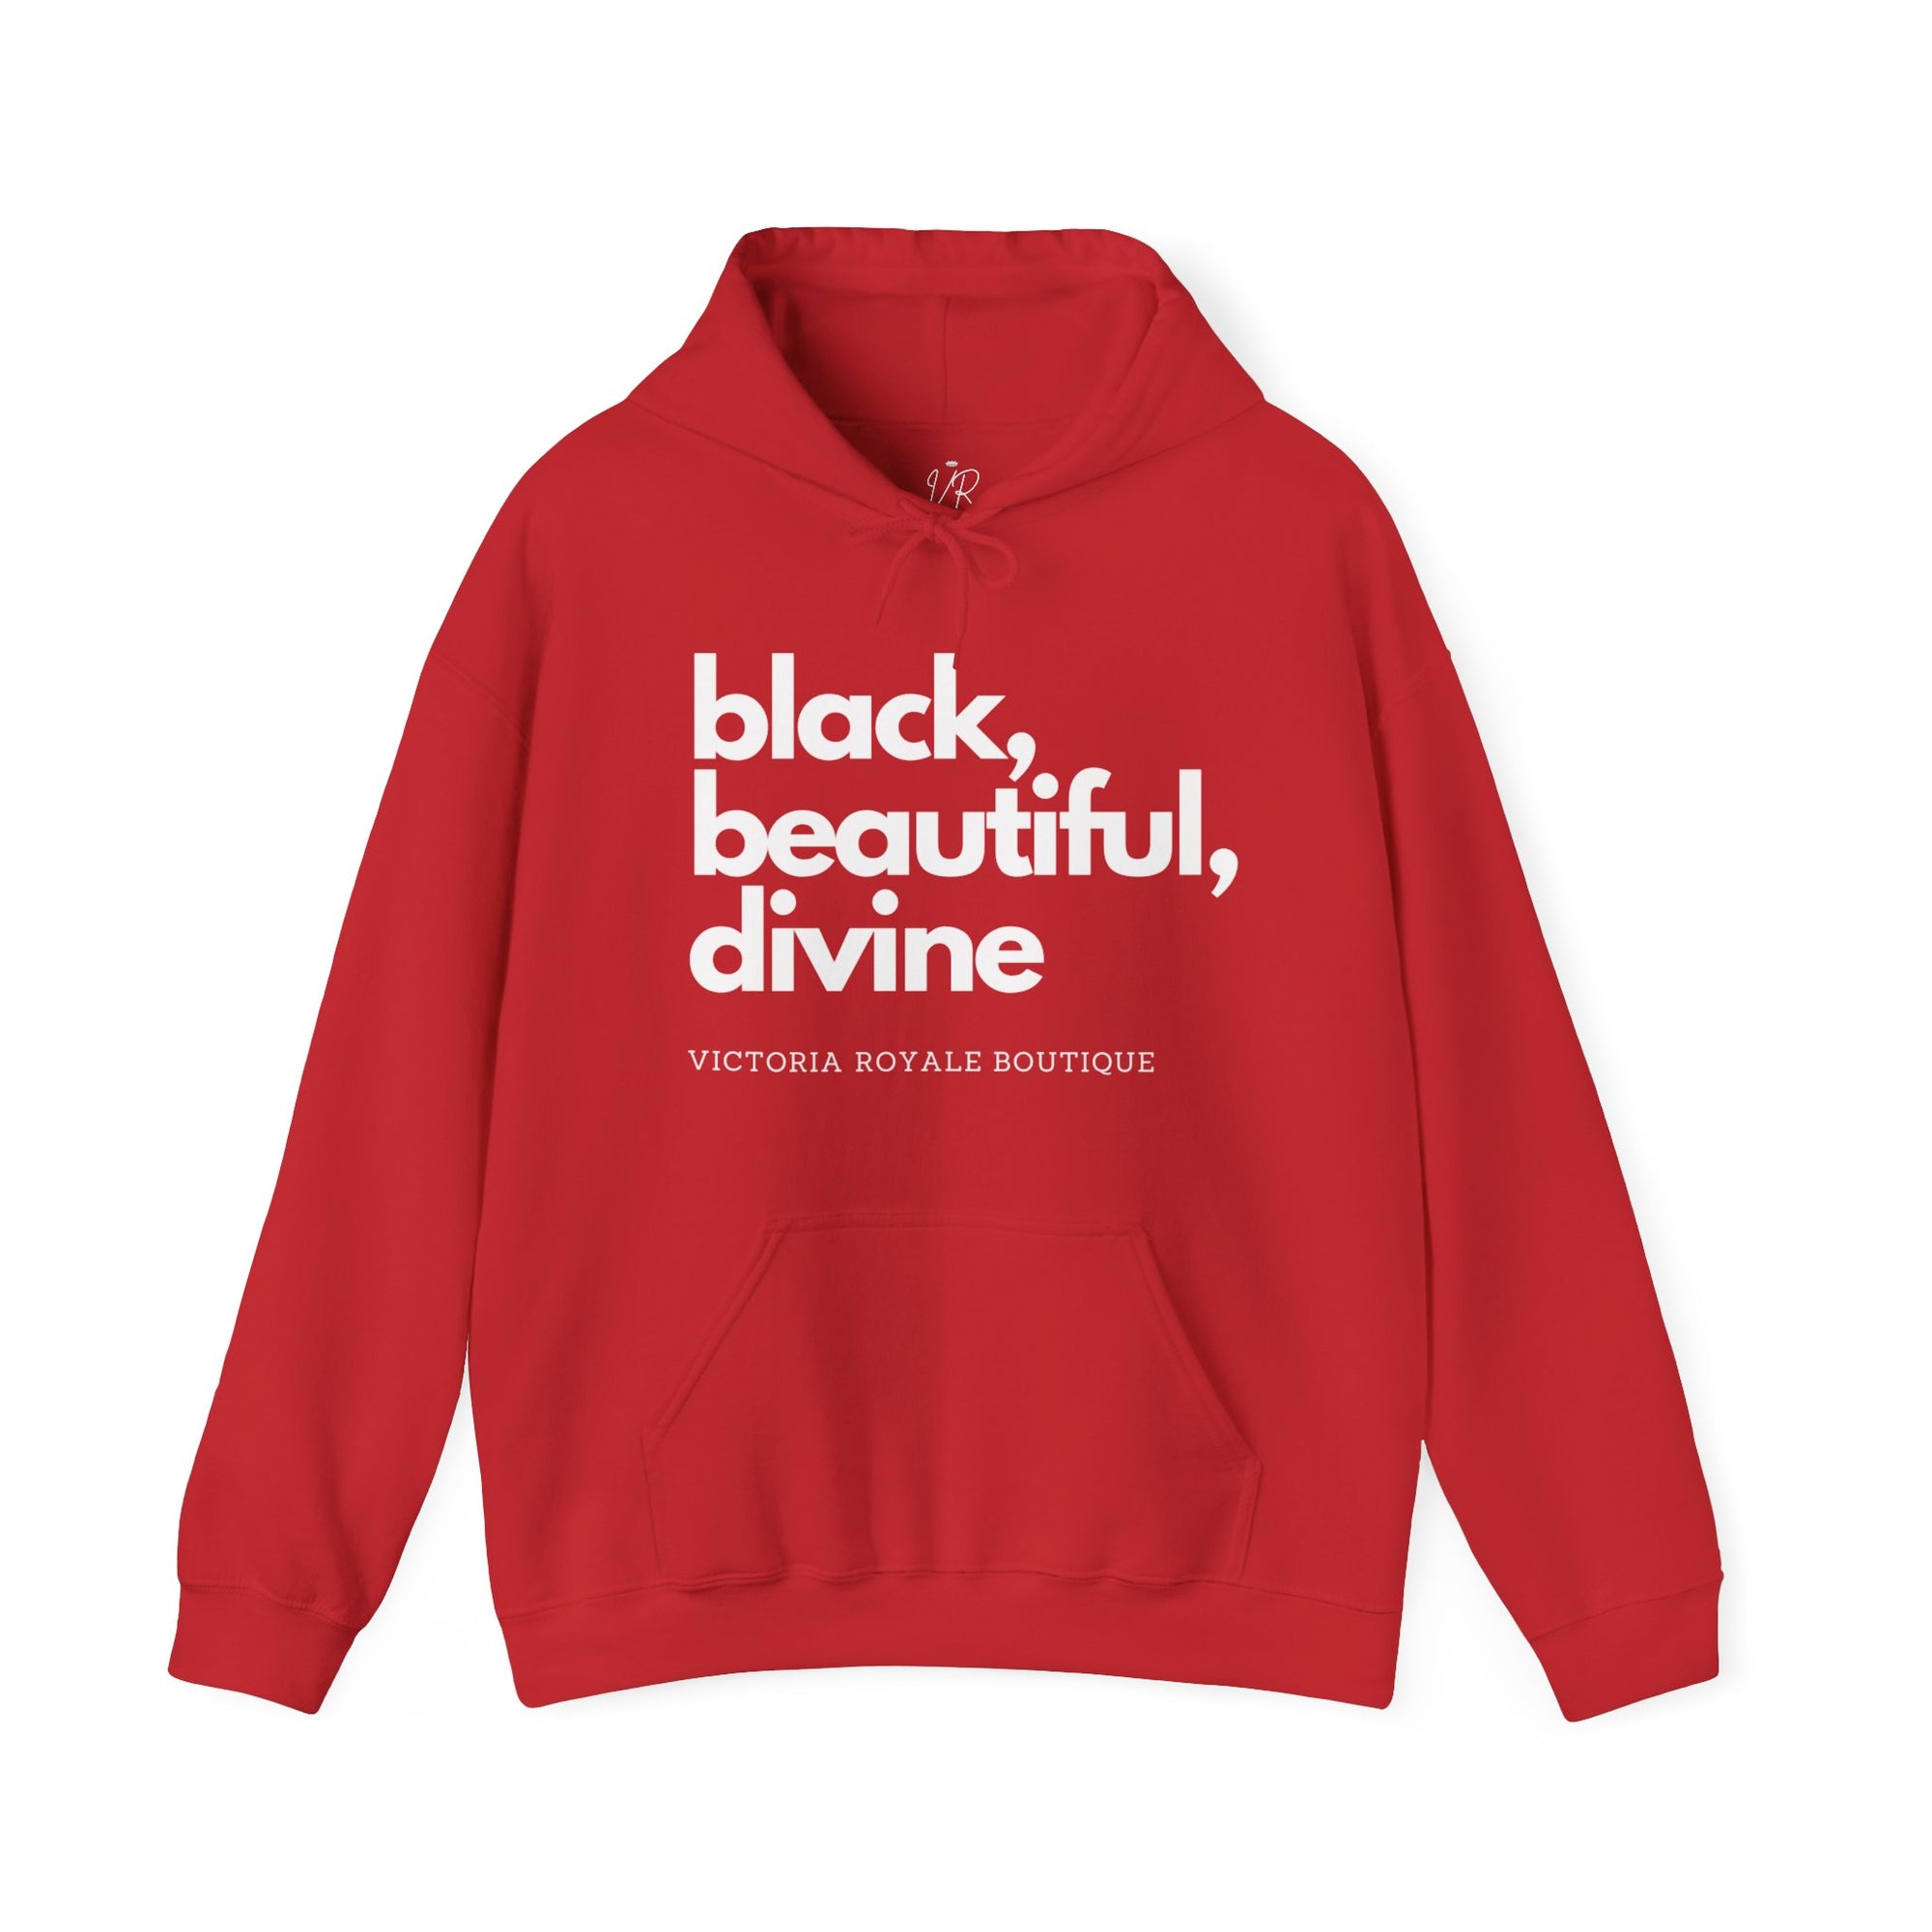 Black, Beautiful, Divine Unisex Premium Pullover Hoodie - Victoria Royale Boutique